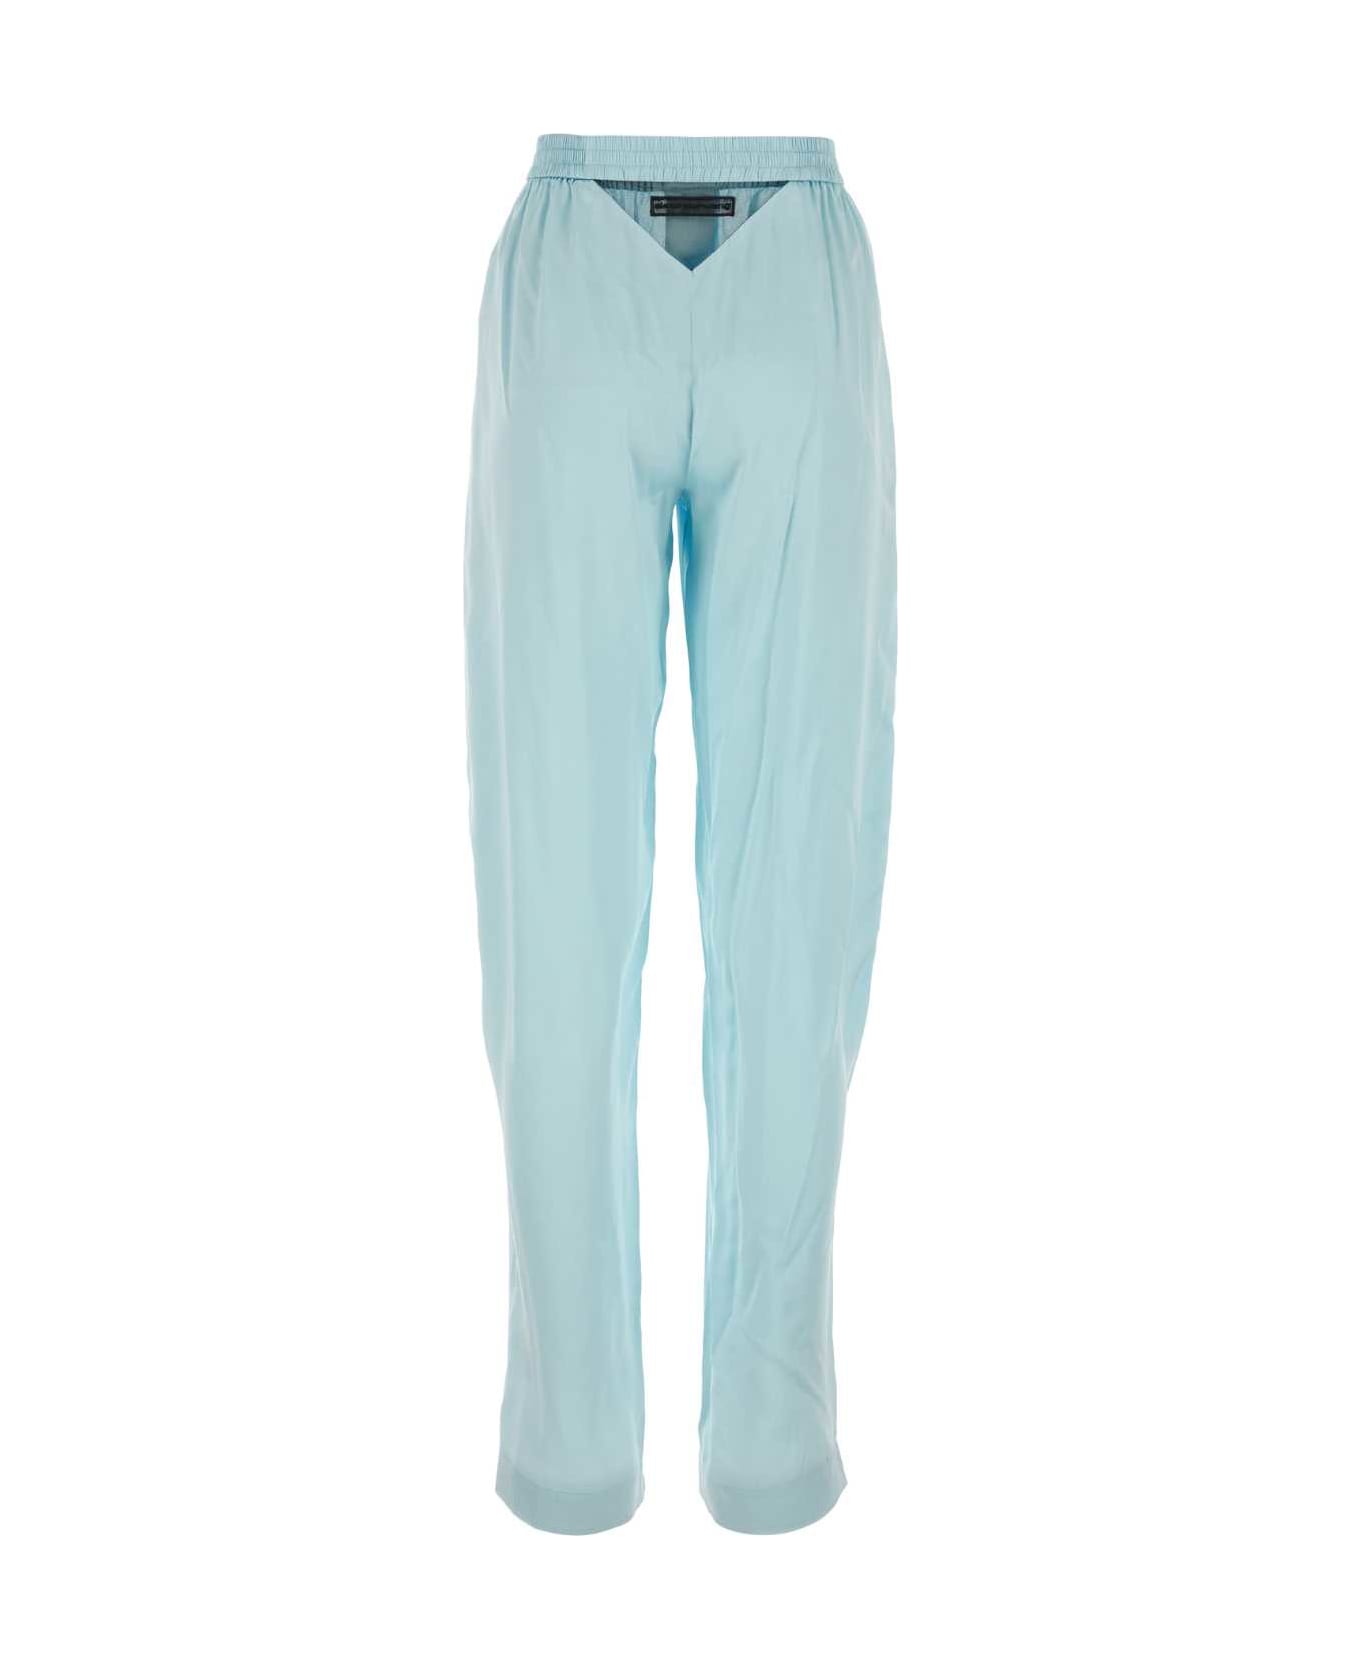 Alexander Wang Light Blue Satin Pyjama Pant - SHINEBLUE